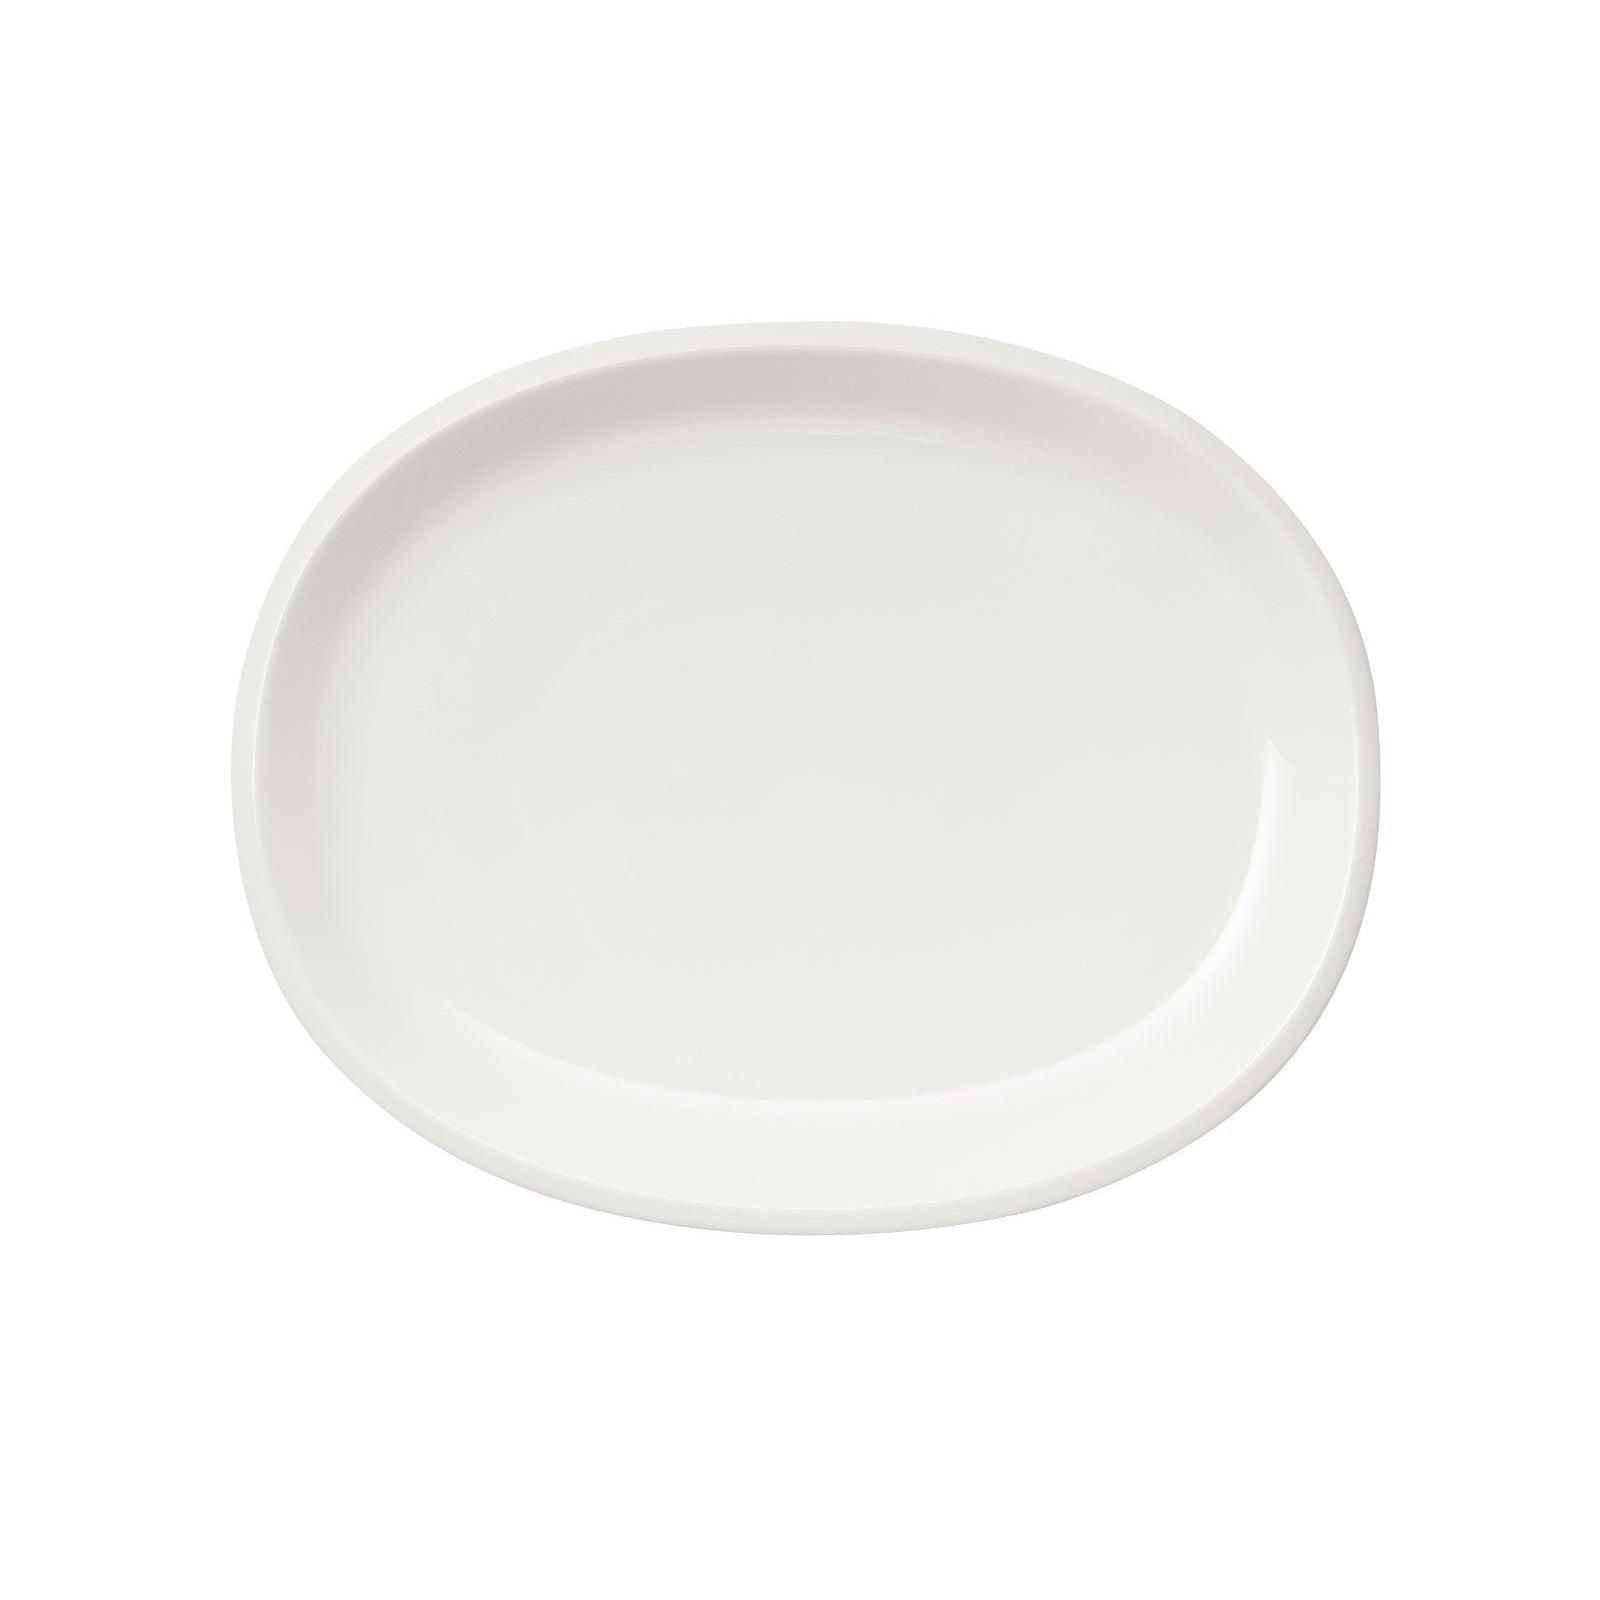 Iittala Raami serverande platta vit, 35 cm